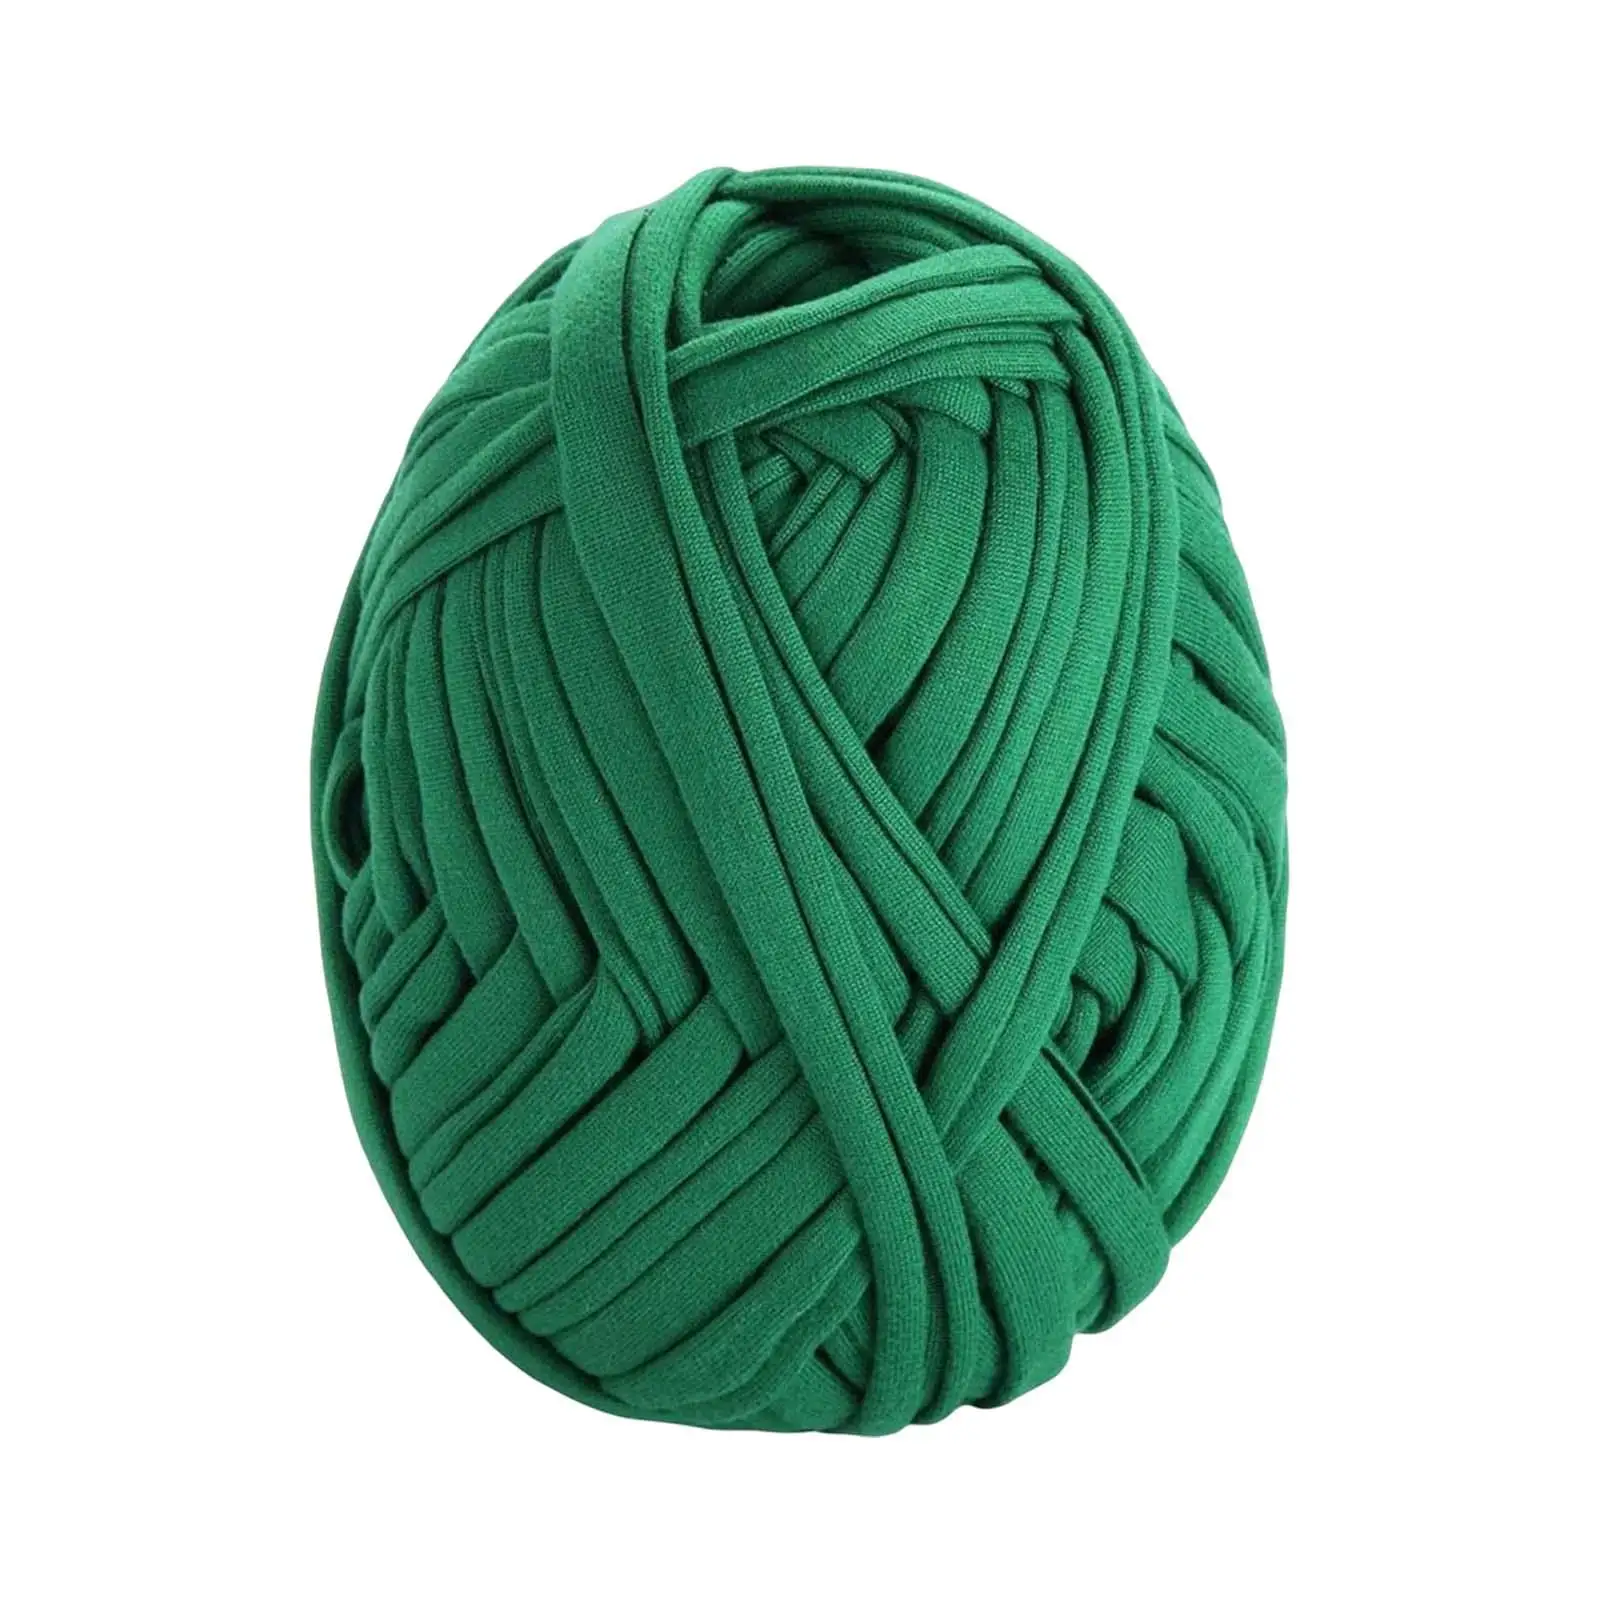 100G/0.22lb Knitting Yarn Threads DIY Comfortable Braided 30M/32.8 Yards Crocheting Hand Waved Yarn for Summer Bag Cushion Scarf